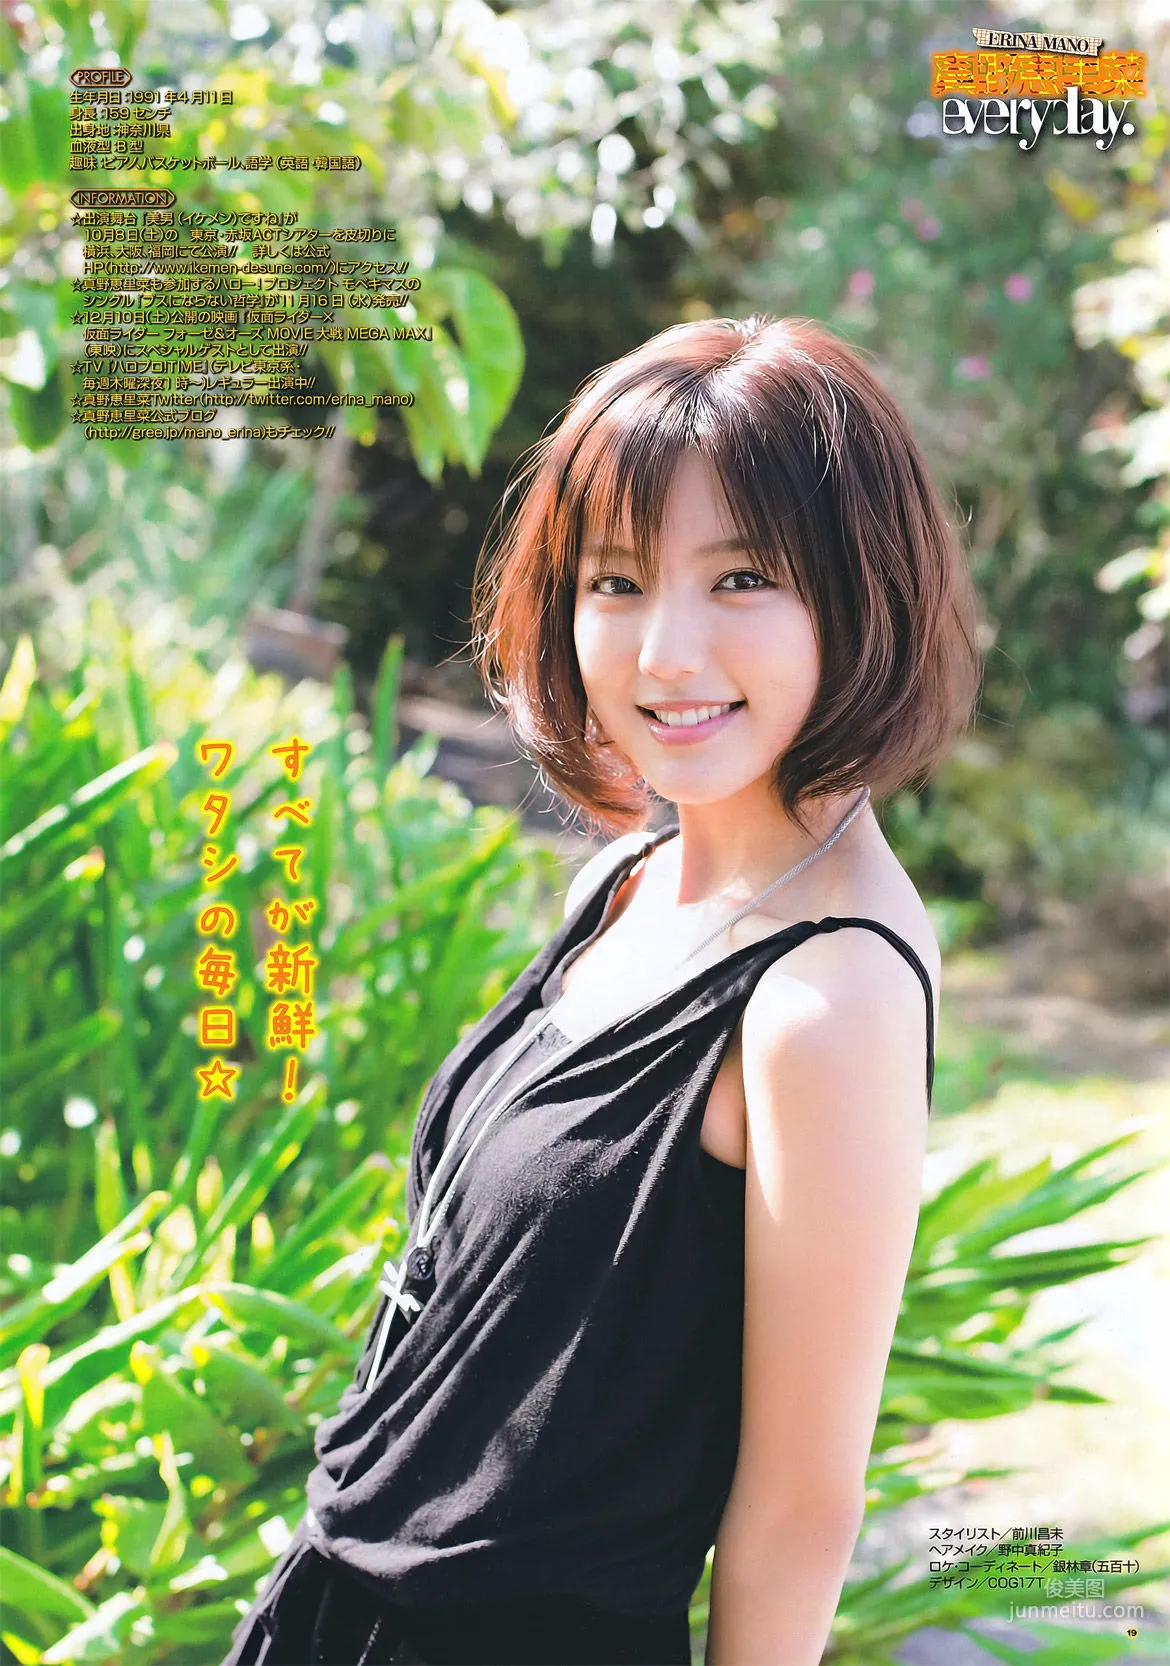 [Young Gangan] 真野恵里菜 Erina Mano 2011年No.20 写真杂志8